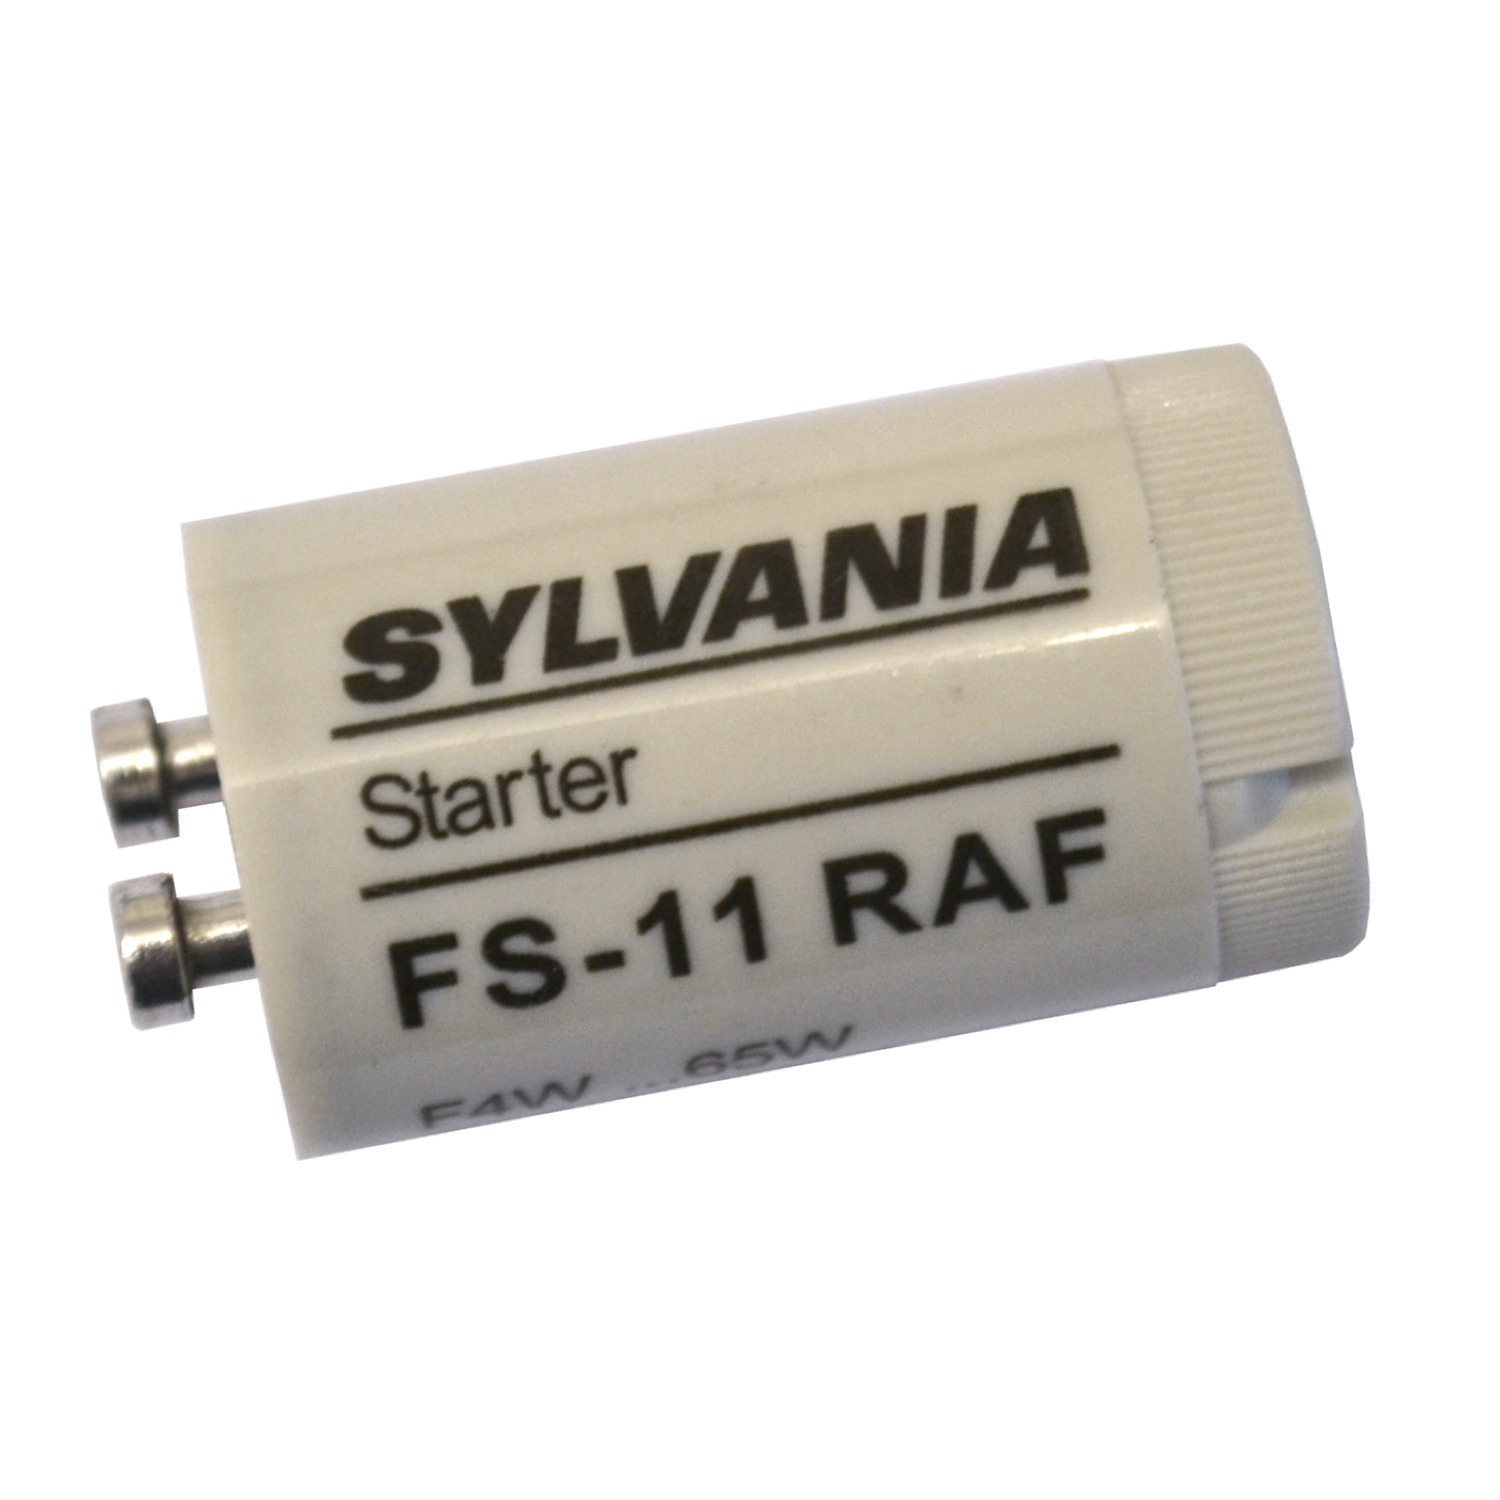 5 x Starters pour la plupart des Types de Lampes Fluorescentes 4-65 W Sylvania de marque FS 11 